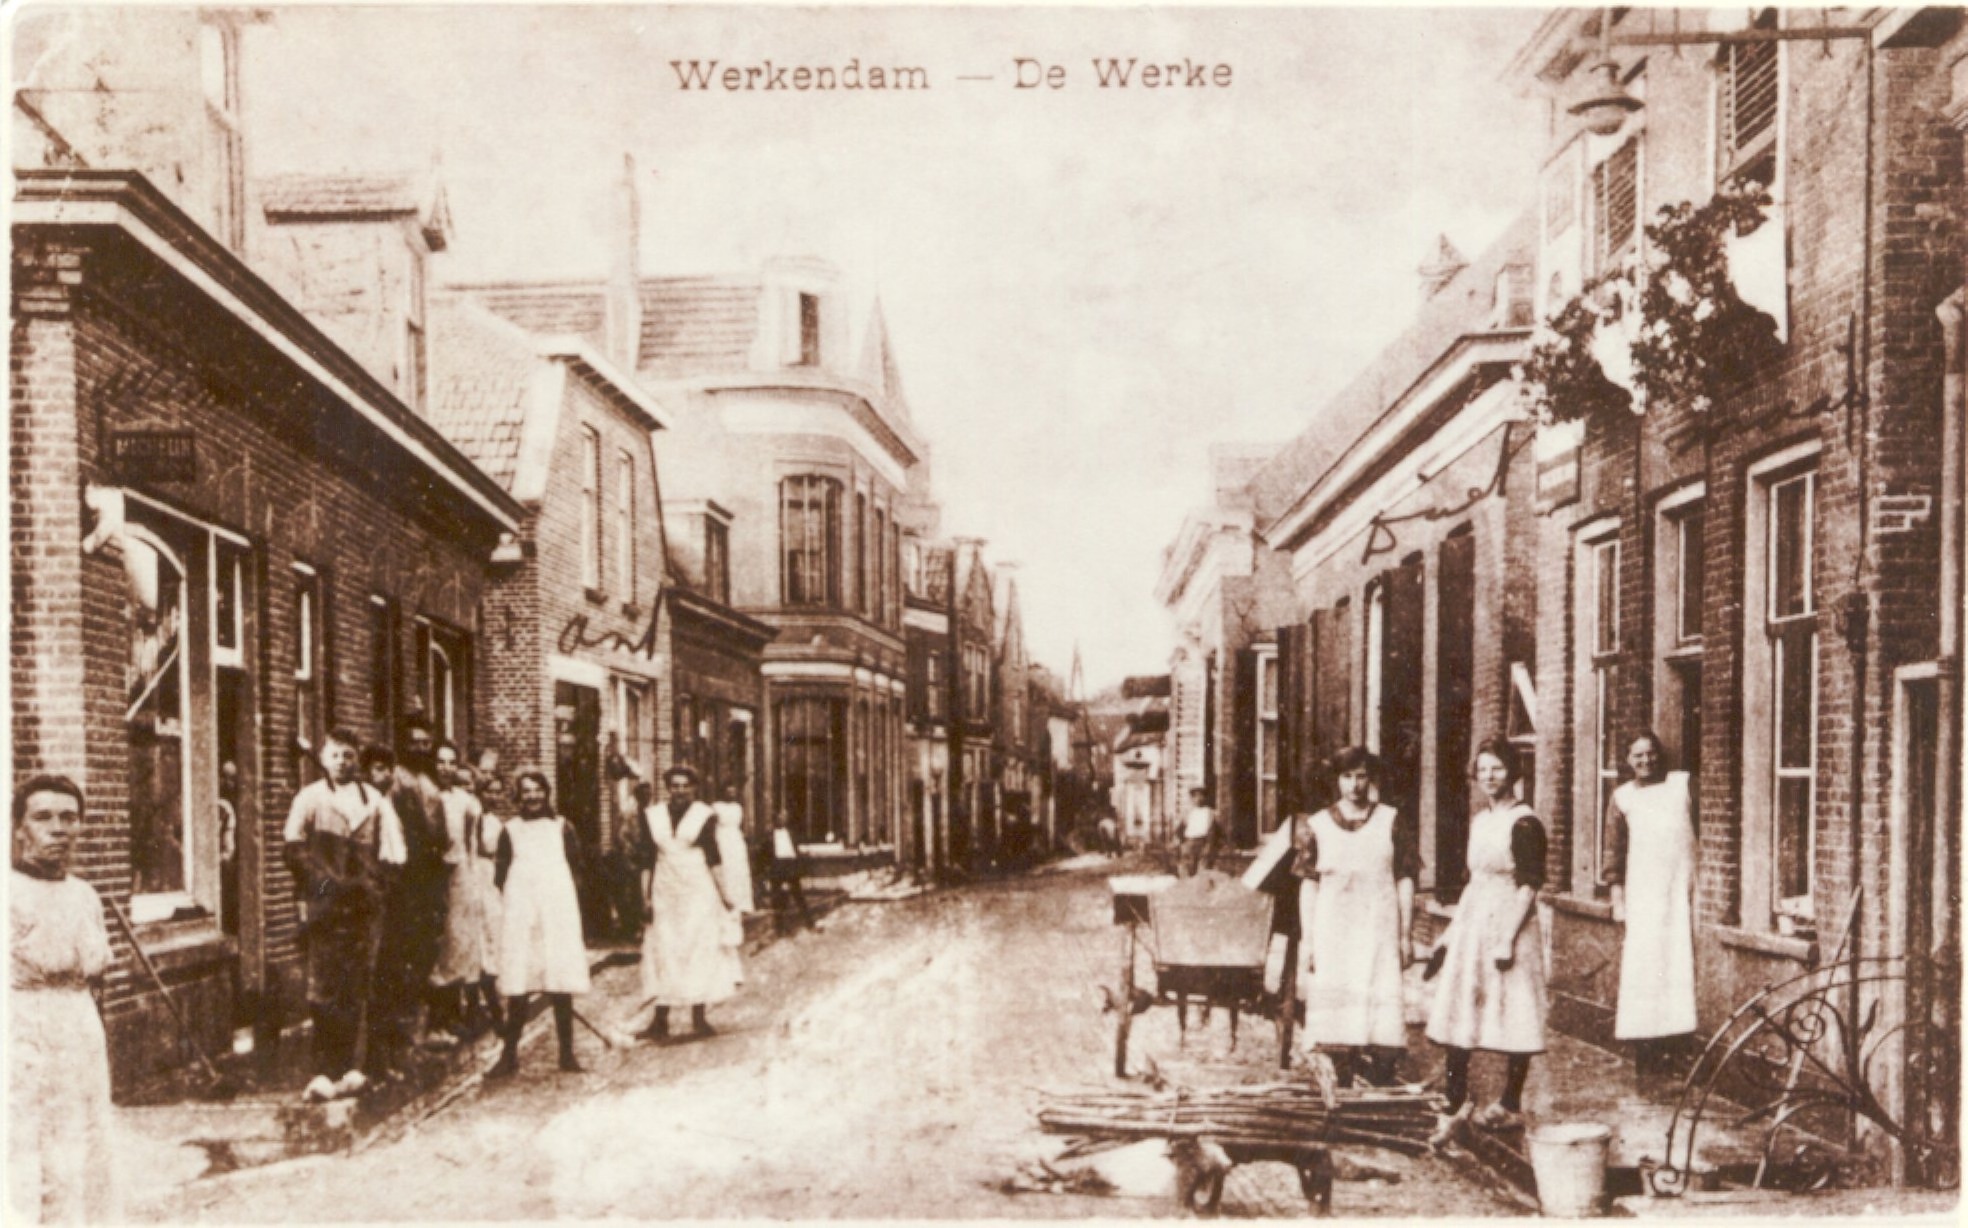 De Werken en Sleeuwijk, Het dagelijks leven in de Kruisstraat nabij de grens tussen Werkendam en De Werken, ca. 1900 